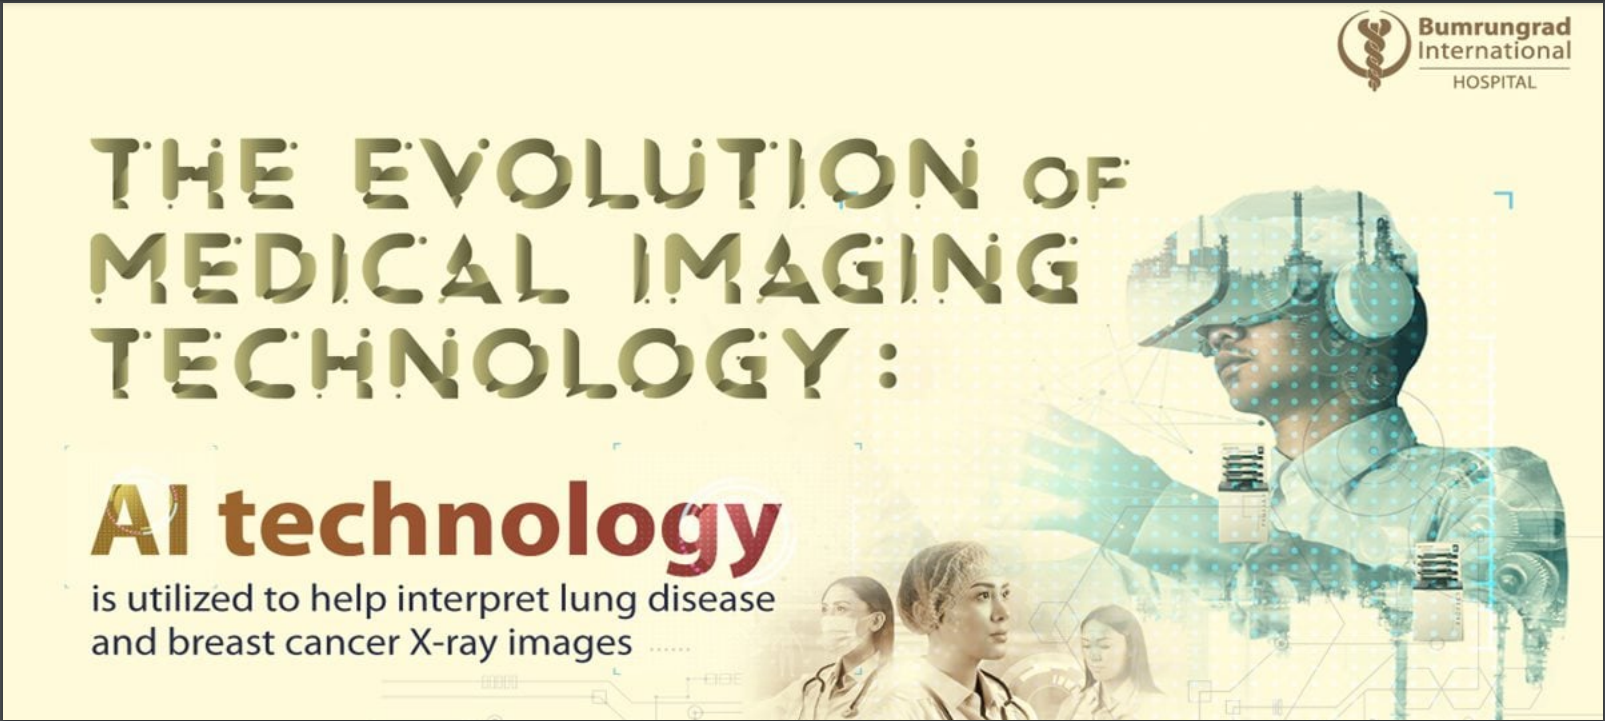 Sự phát triển của công nghệ trong chuẩn đoán hình ảnh y tế